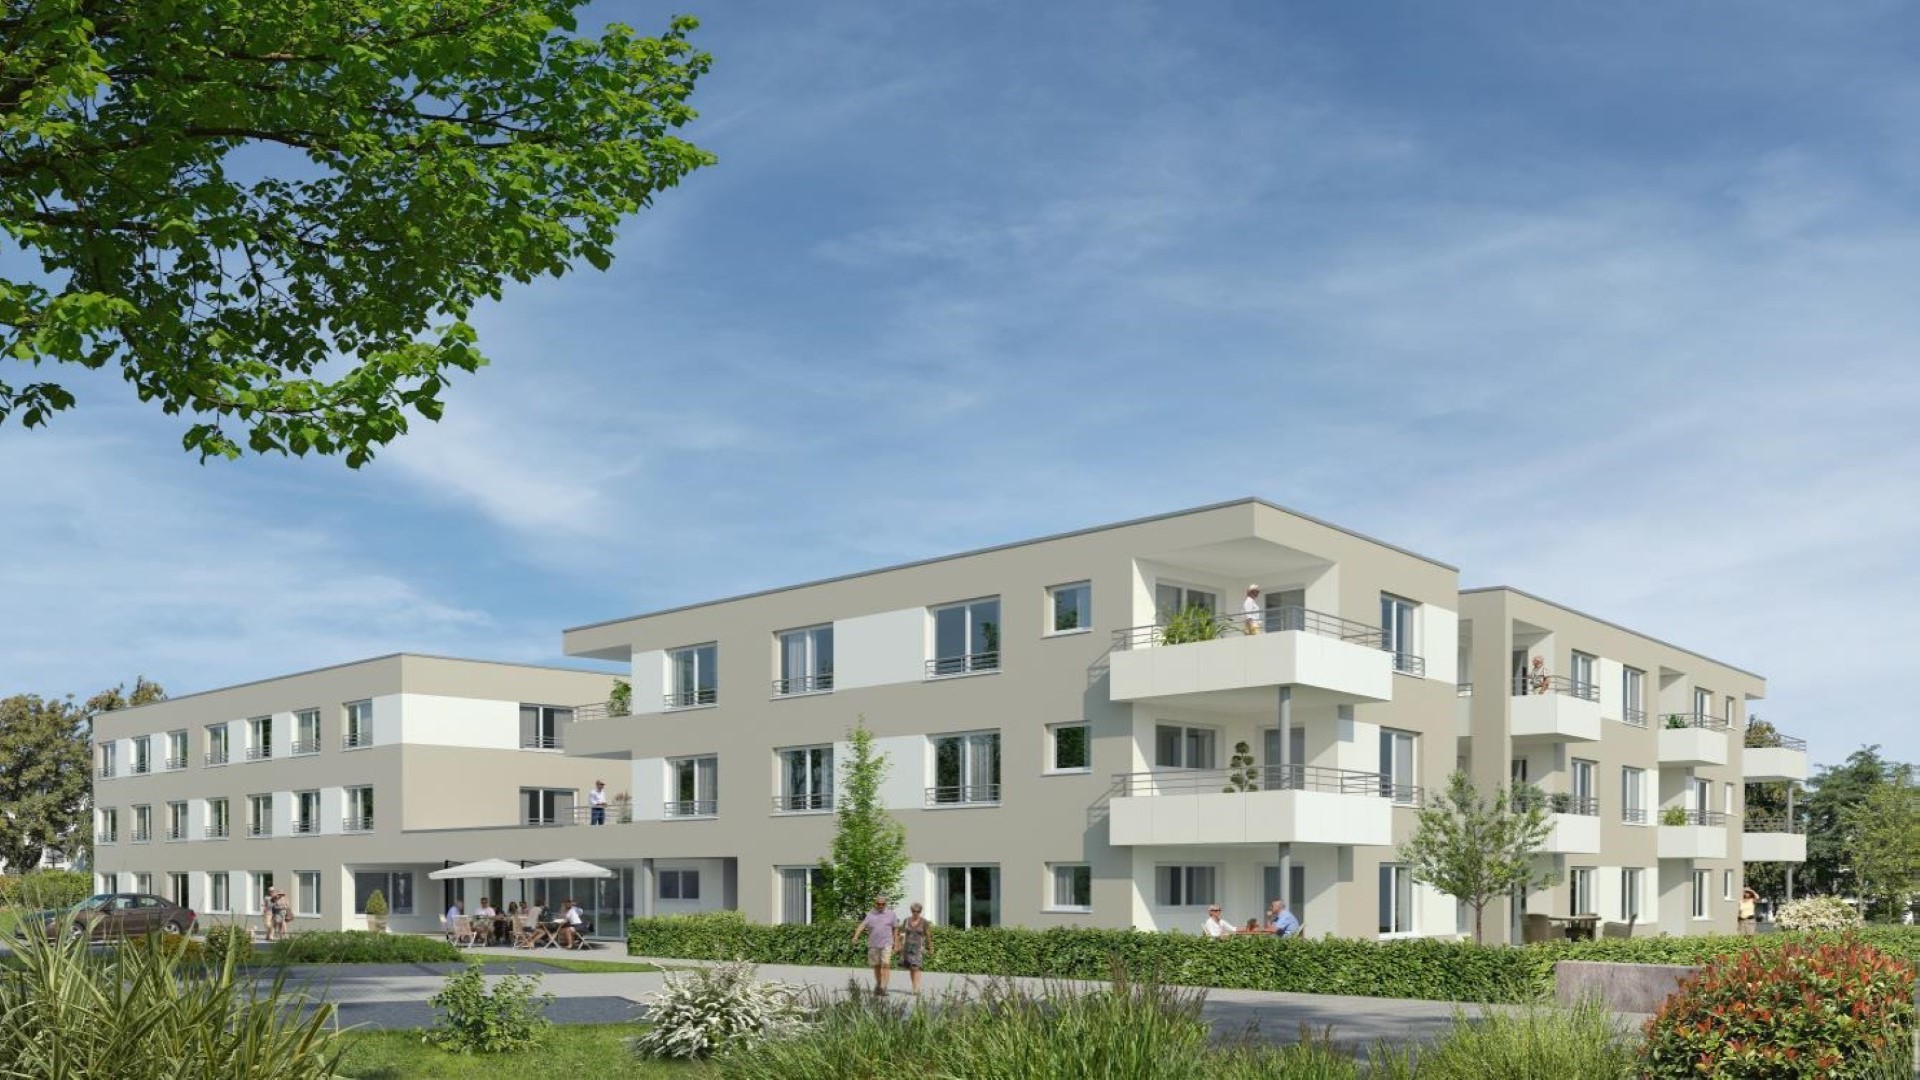 Immobiliensuche Wohnungen und Häuser in Karlsruhe und